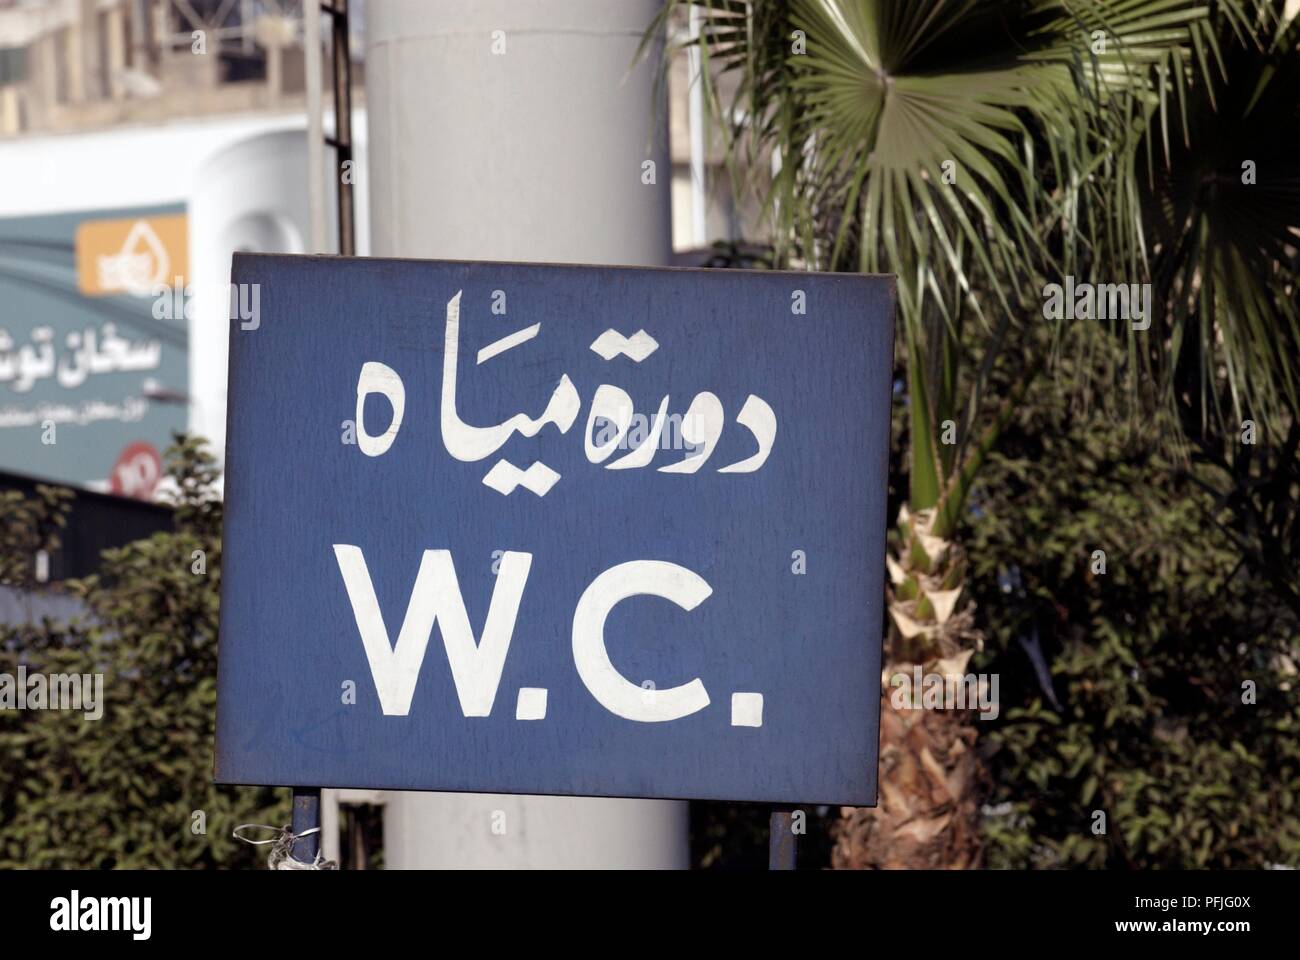 Egypte, Caire, toilettes signe en arabe et de l'ouest de script Banque D'Images